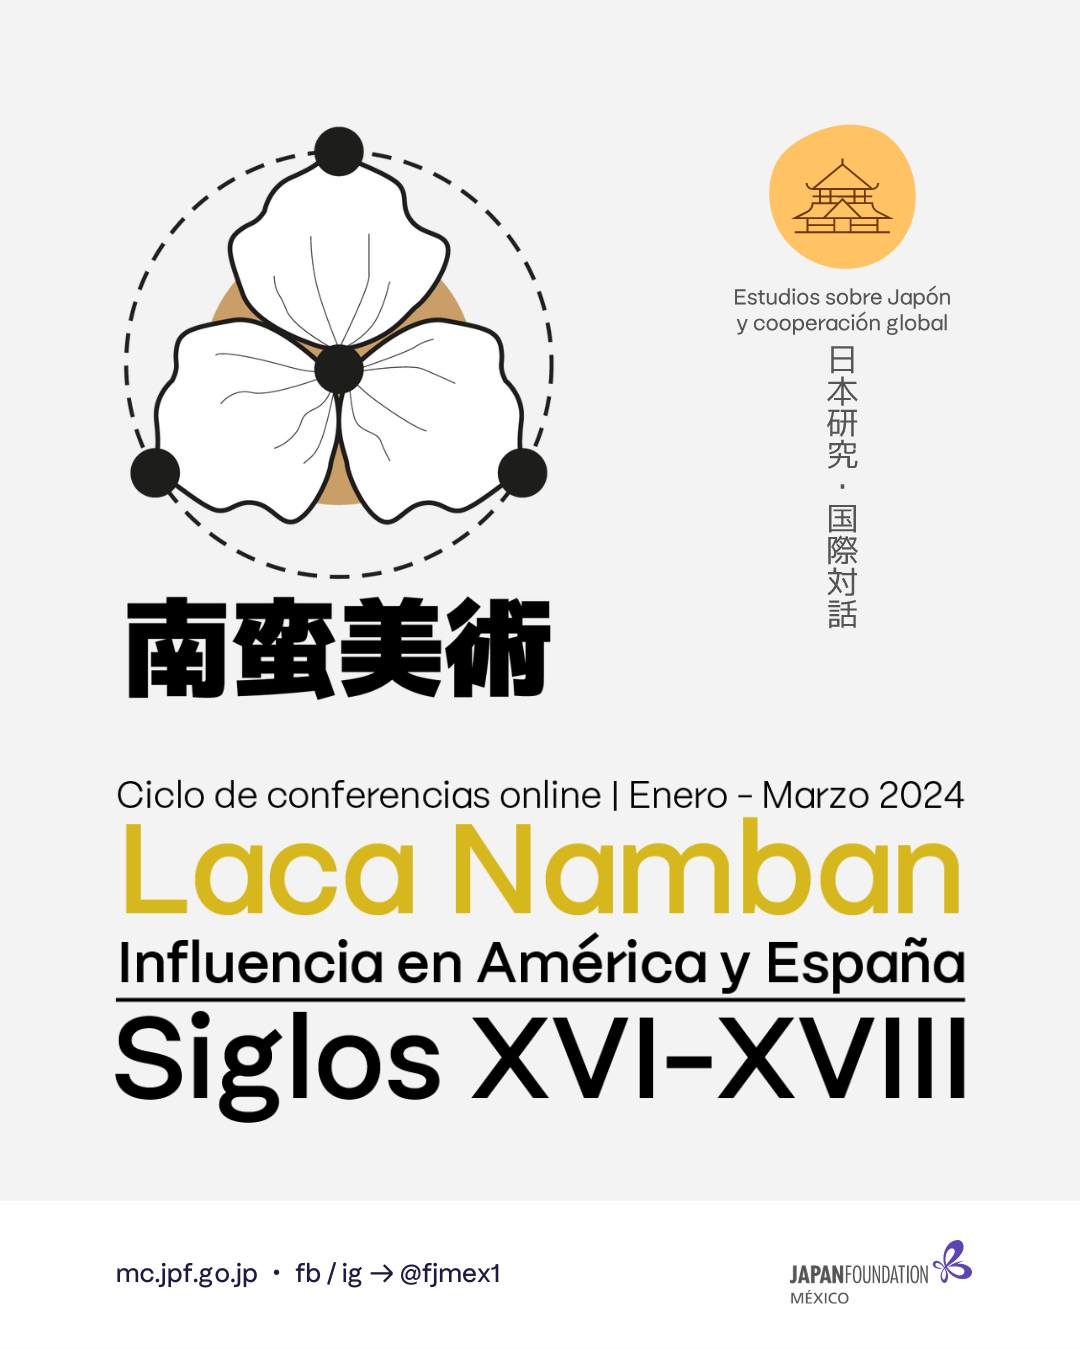 Ciclo de Conferencias Fundación Japón: “Laca Namban: Influencia en América Latina y España – Siglos XVI-XVIII”.